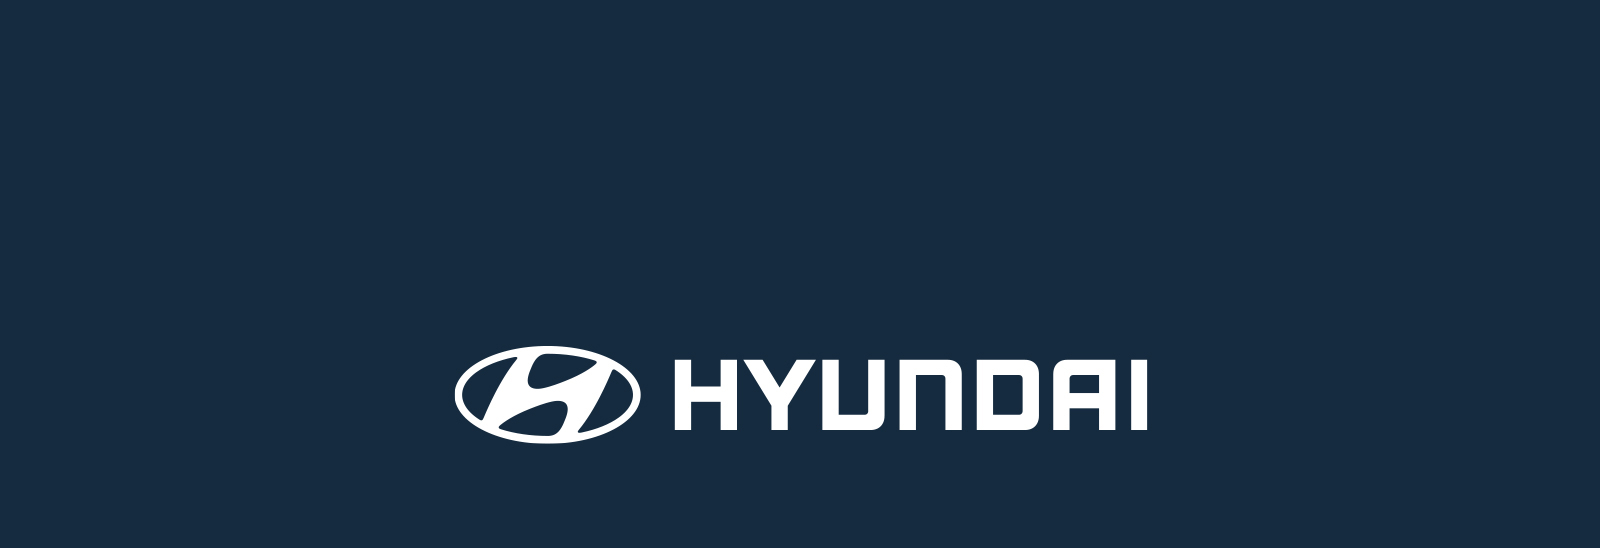 Logo Hyundai en color blanco sobre fondo azul